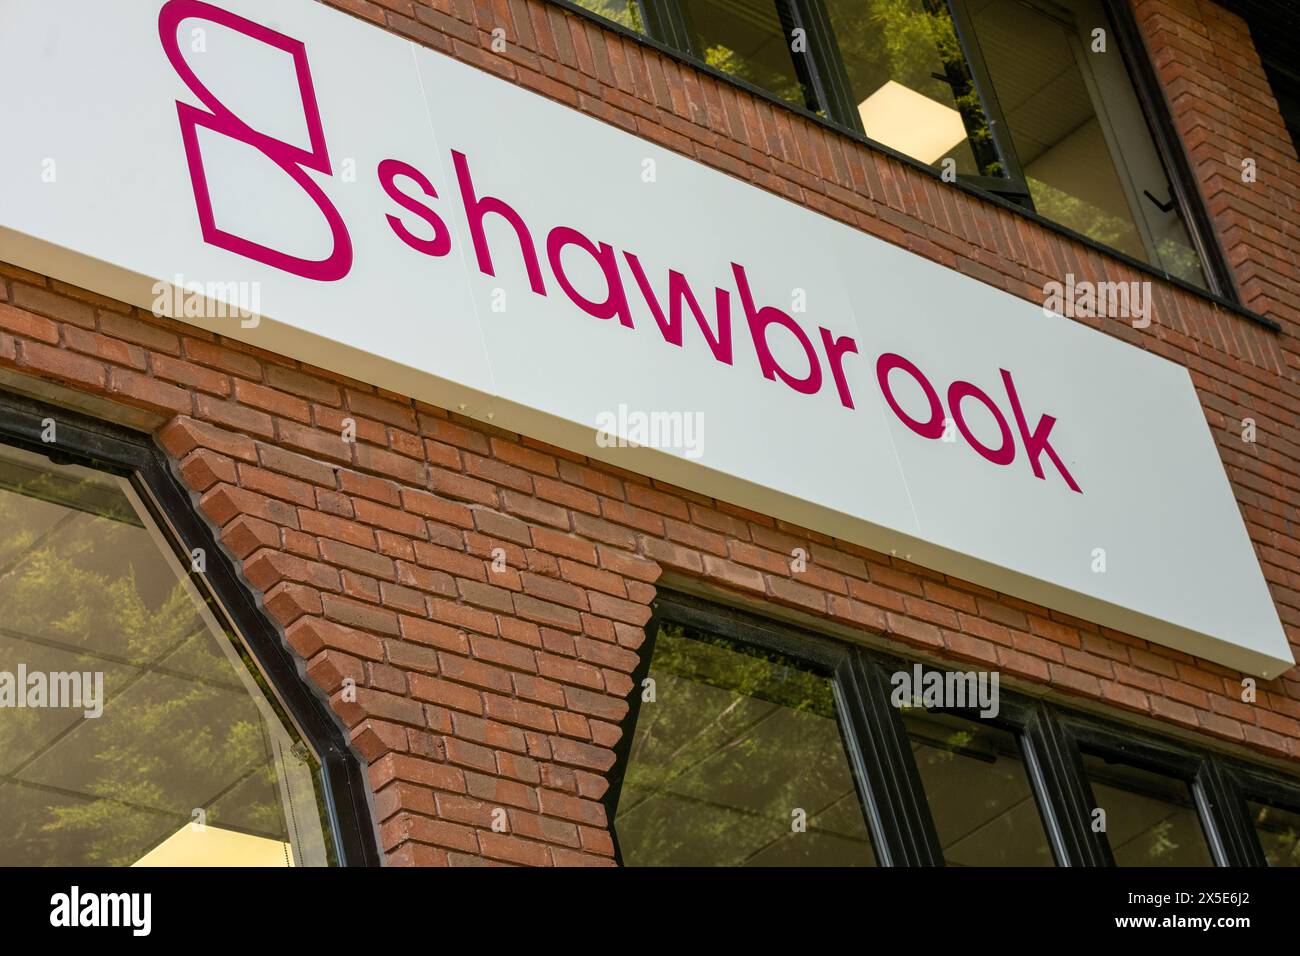 Brentwood Essex 09. Mai 2024 die Shawbrook Bank und die Shawbrook Group plc in Brentwood haben ein außergewöhnliches Jahresergebnis angekündigt. Sie erzielen ein bereinigtes Ergebnis vor Steuern von 302 Millionen Pfund und eine bereinigte Cost-to-Income-Ratio von 38 %. Quelle: Ian Davidson/Alamy Live News Stockfoto